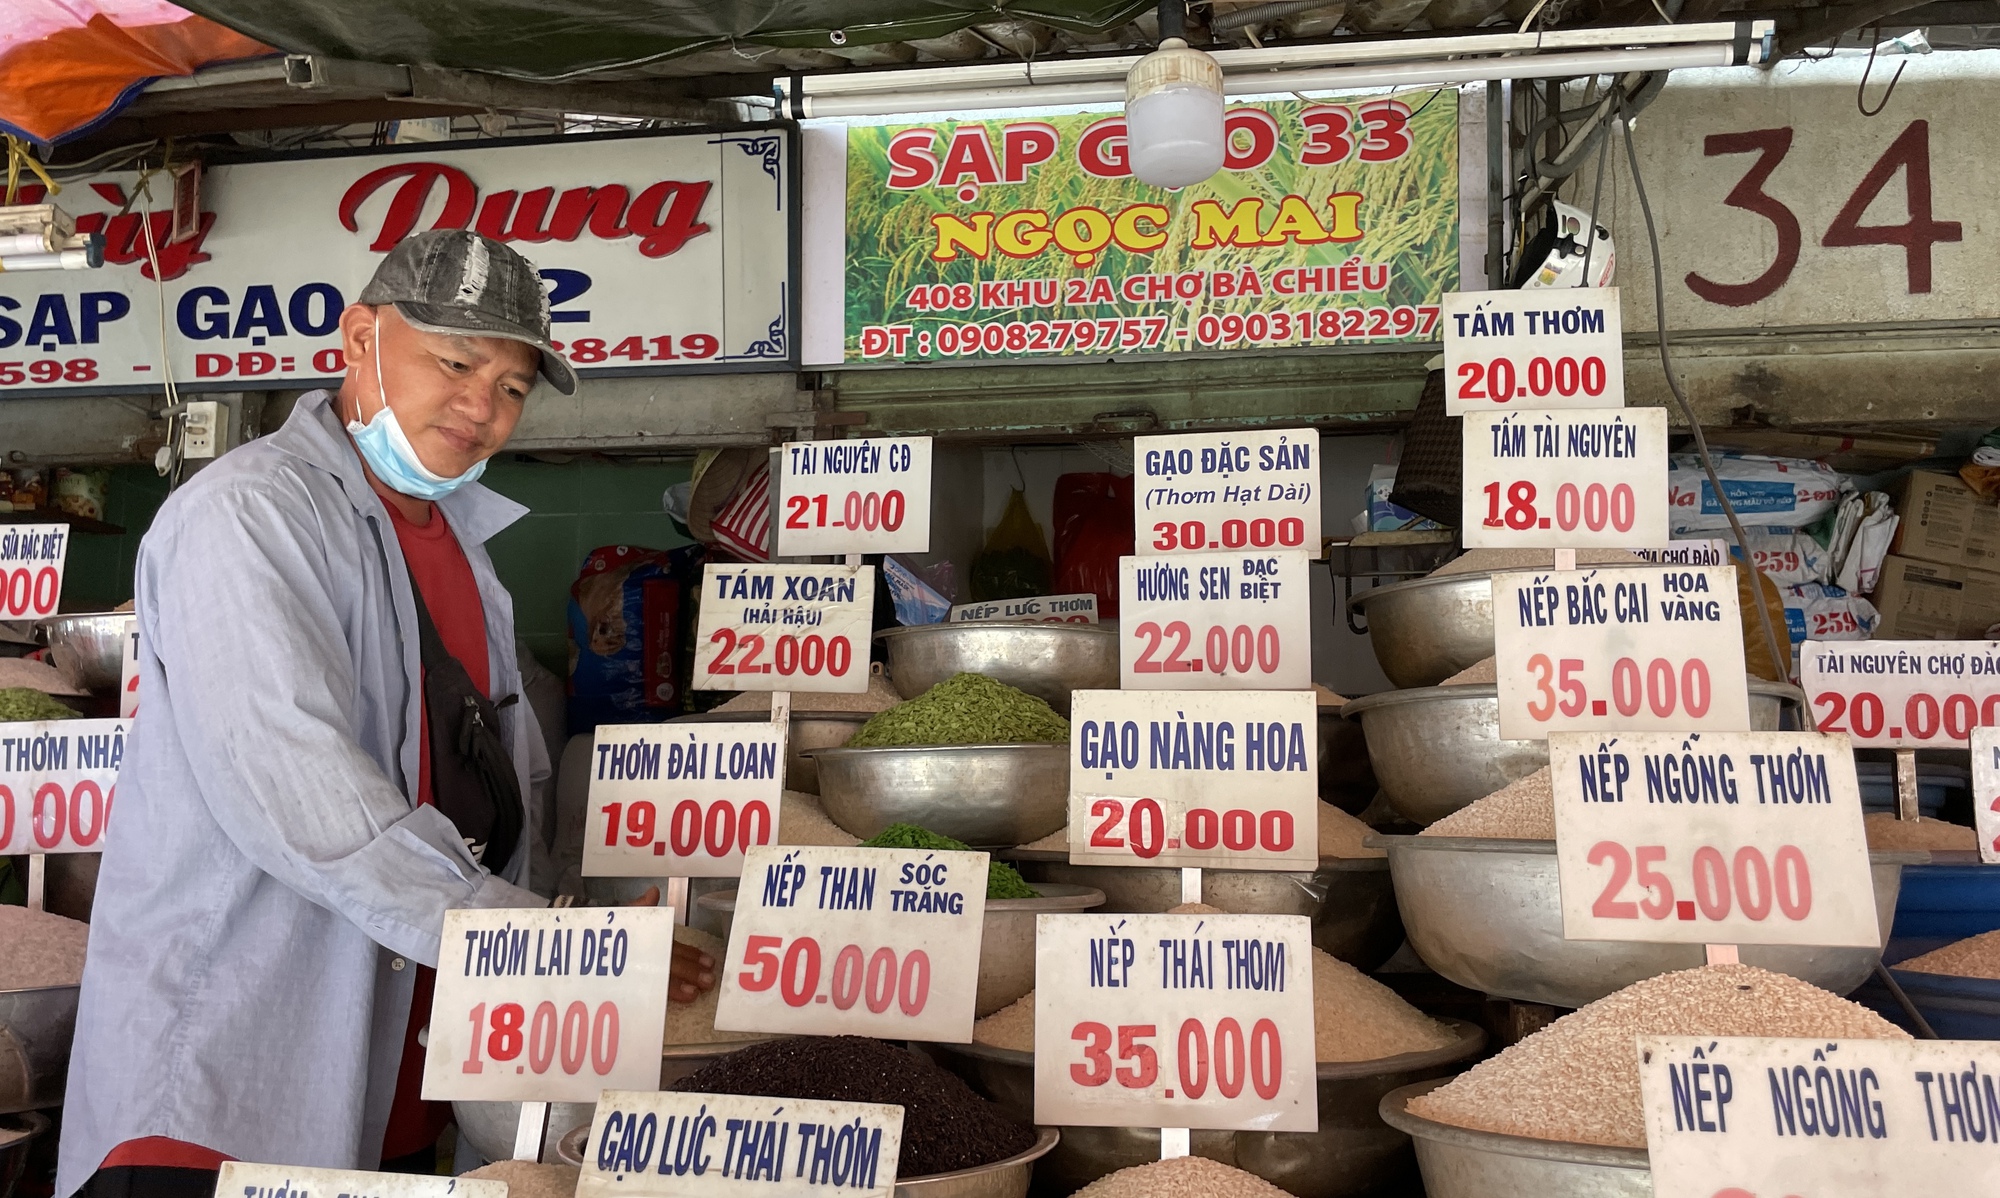 Lo lắng vì giá gạo bán lẻ trong nước cao kỷ lục - Ảnh 1.